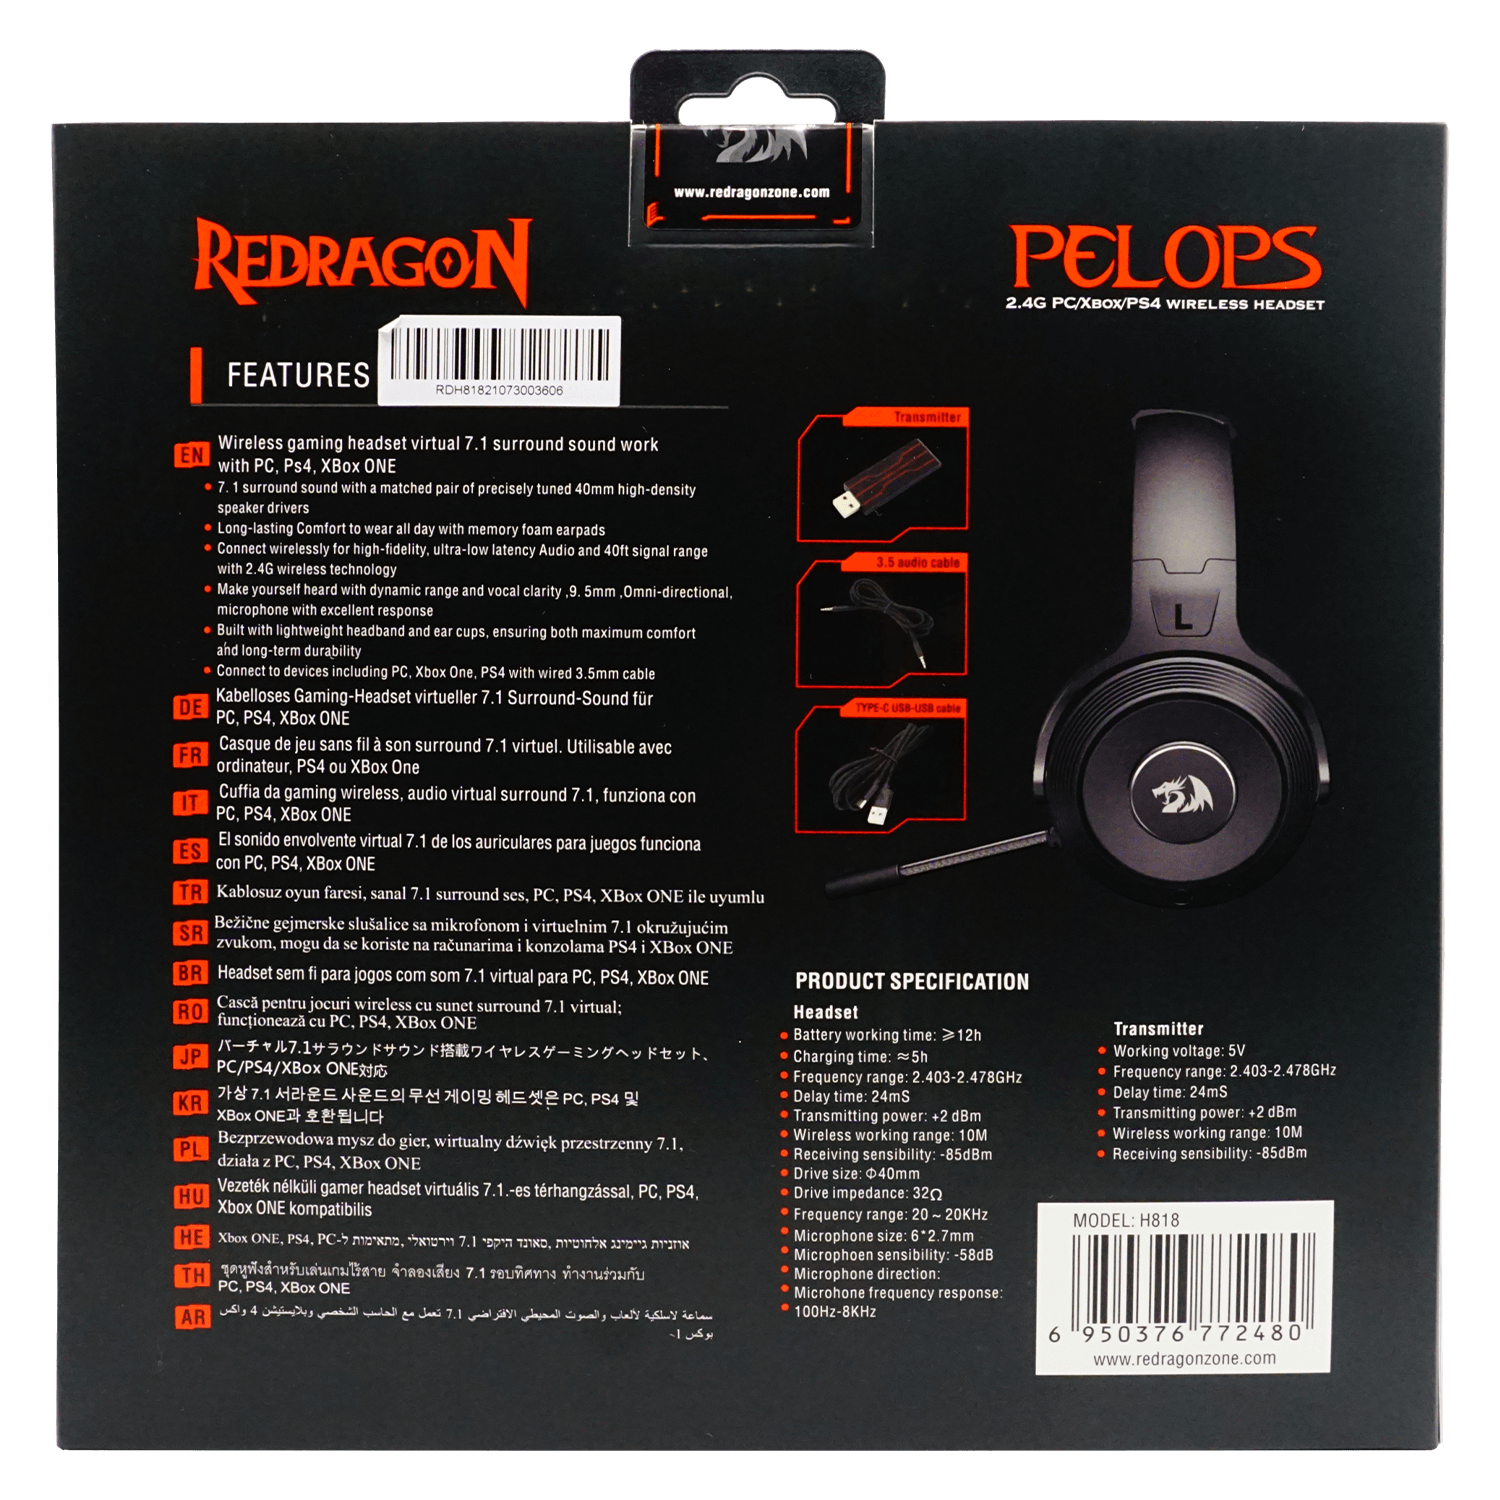 Headset Gamer Redragon Pelops H818 Wireless / 2.4GHZ / com Transmissor USB- Preto e Vermelho